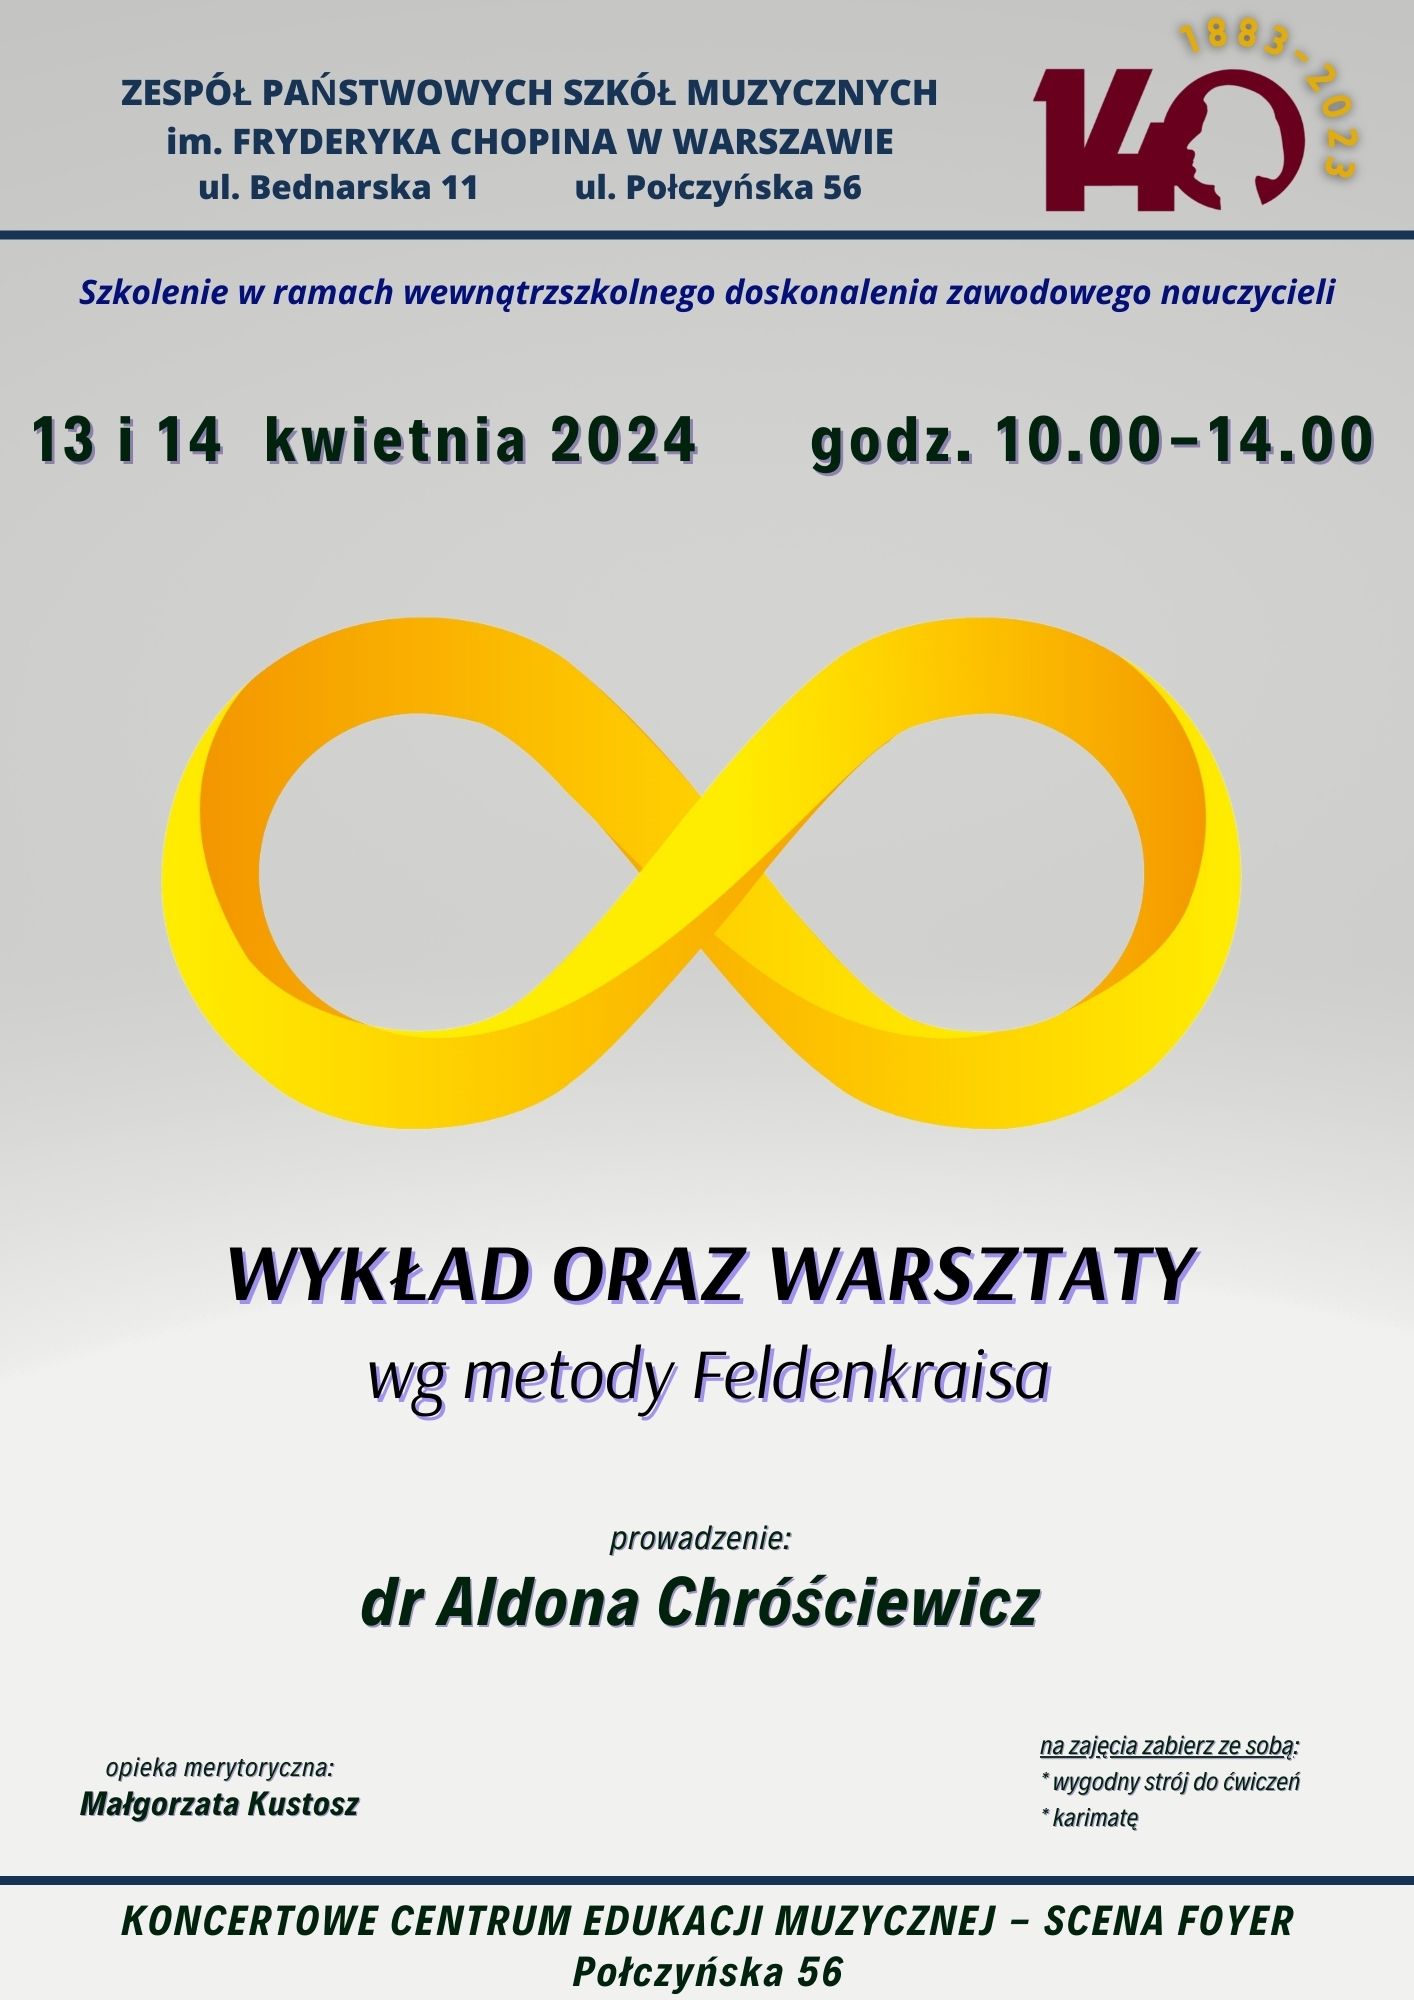 2024.04.13 - dr. Aldona Chróściewicz - warsztaty - metoda Feldenkraisa